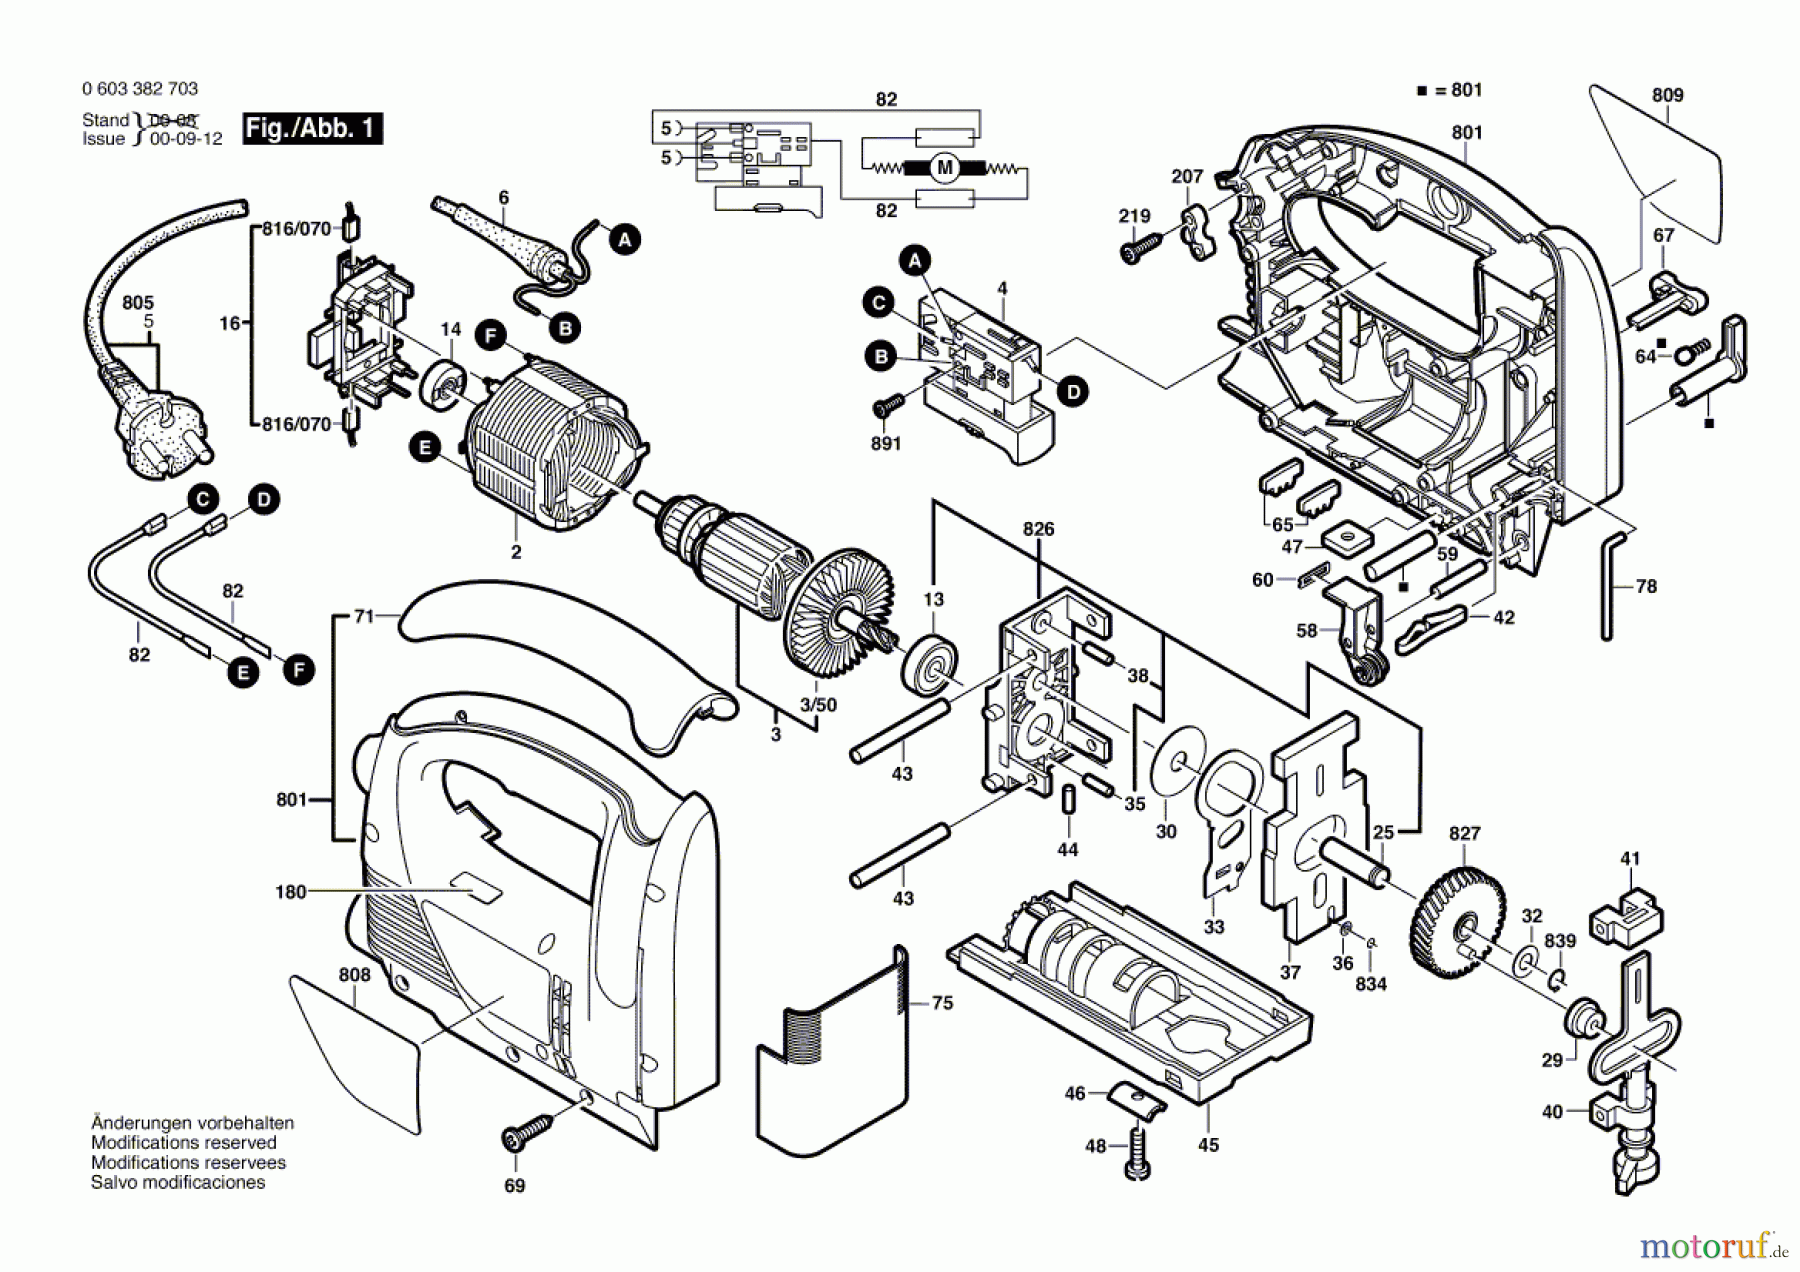  Bosch Werkzeug Stichsäge PST 750 PE Seite 1